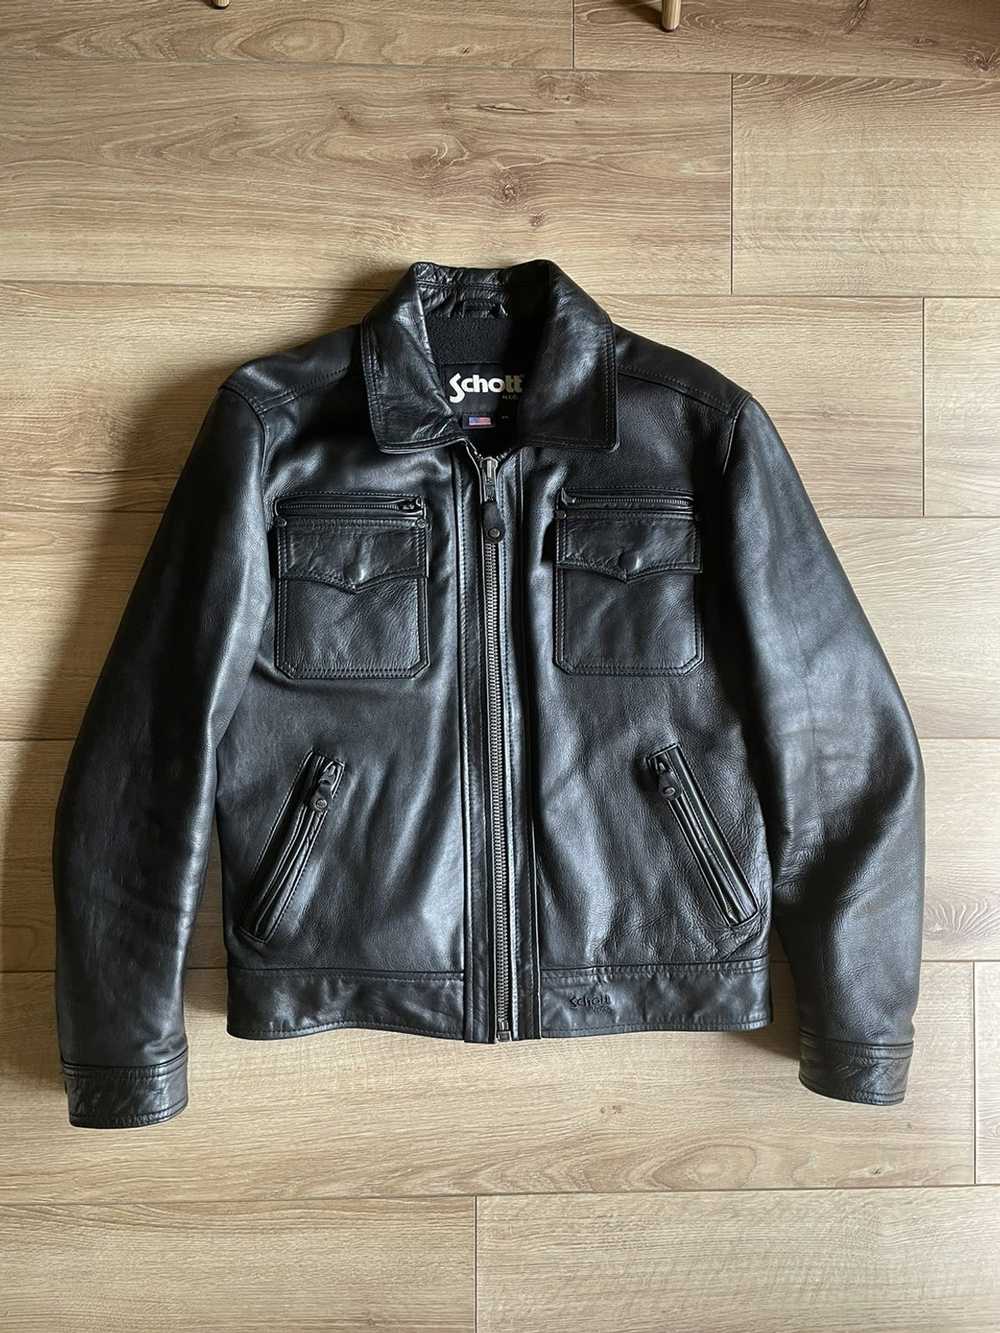 Schott Schott Patrol leather jacket - M - image 1